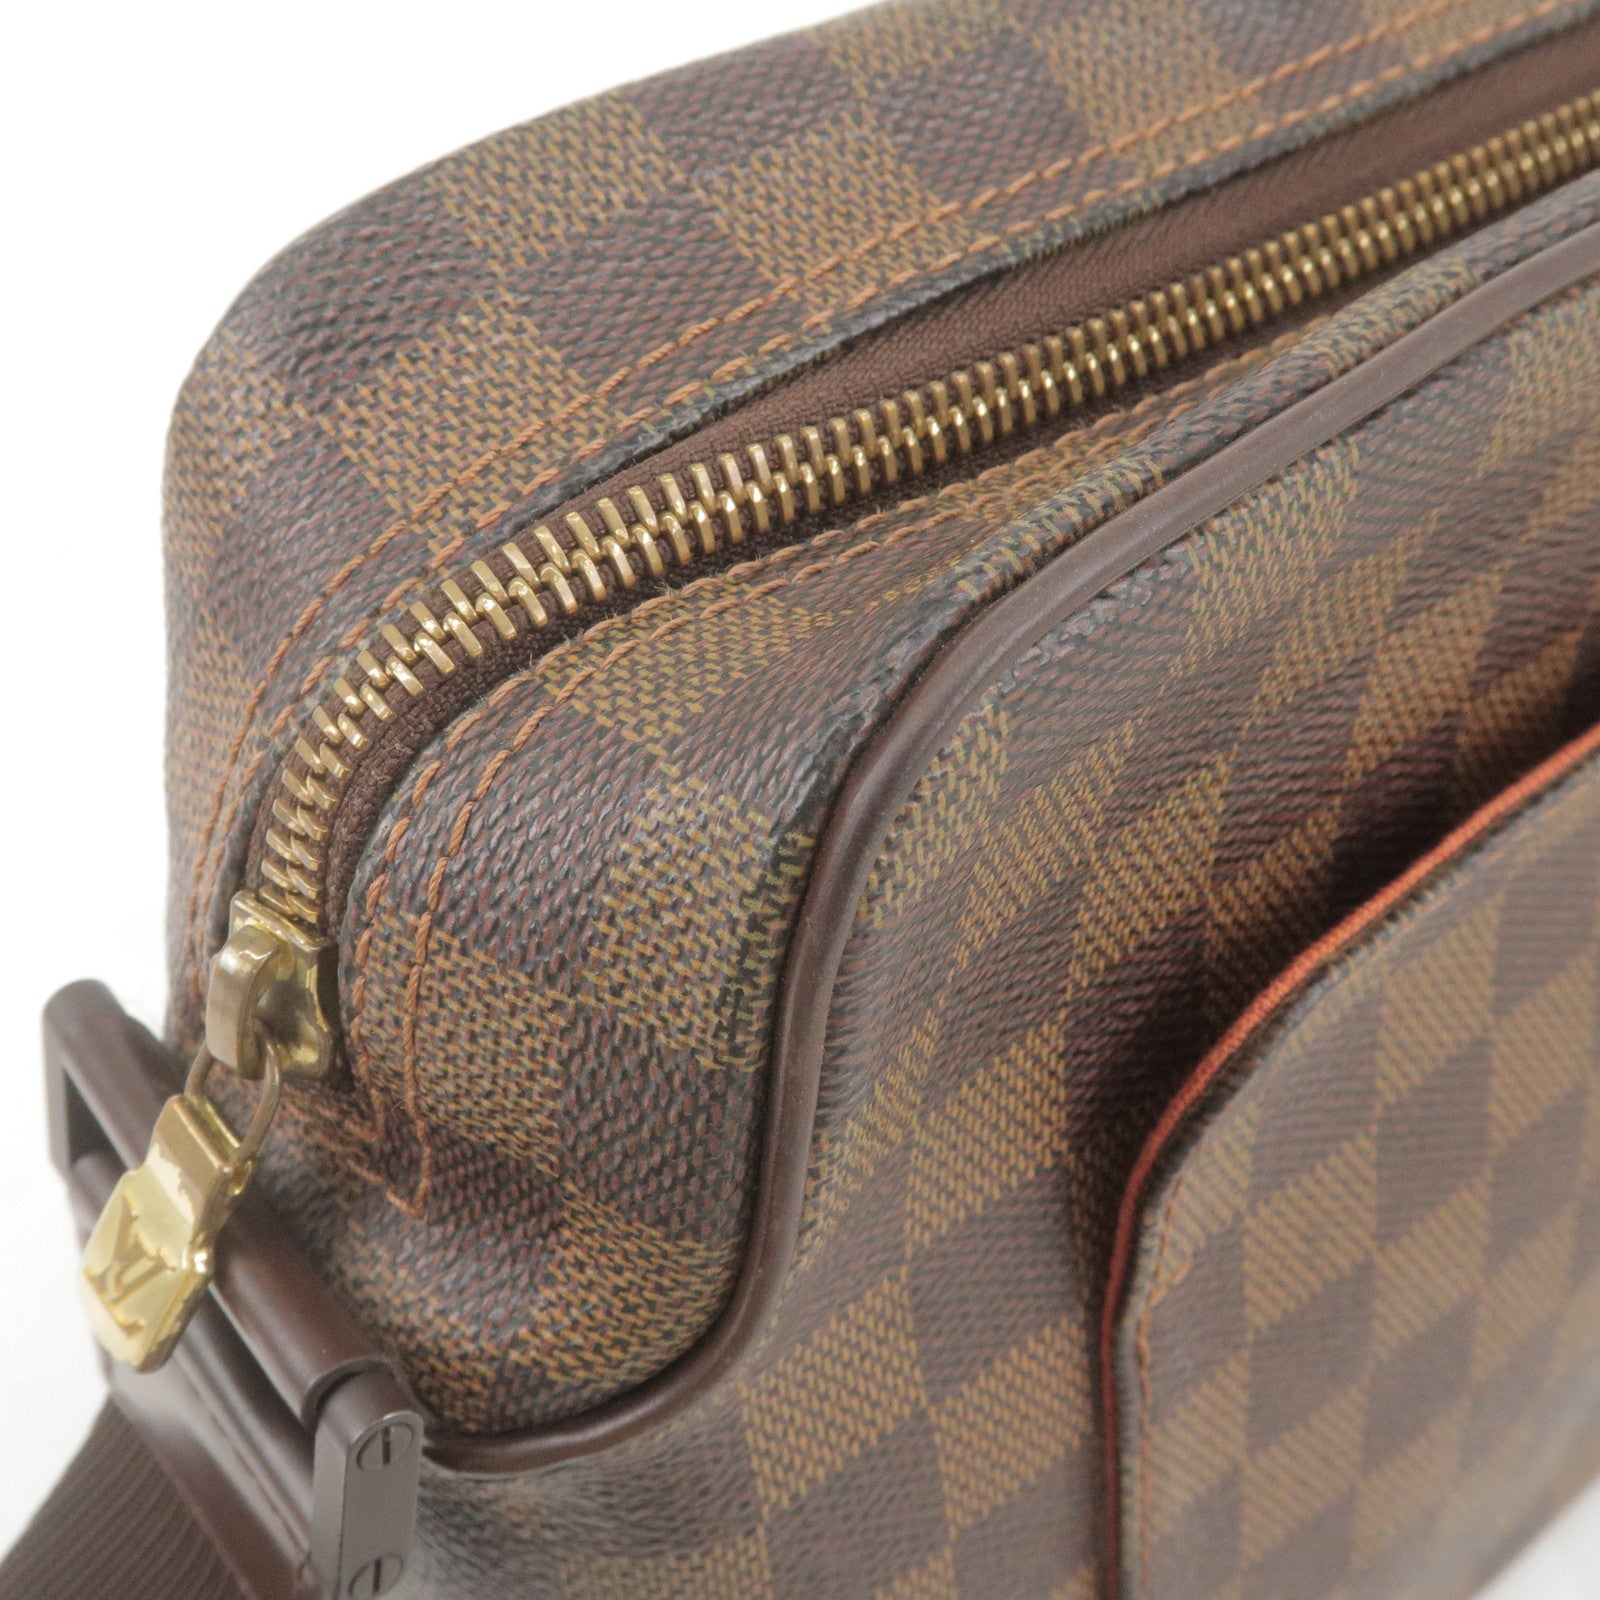 Louis Vuitton LOUIS VUITTON Damier Ebene Olaf PM Shoulder Bag N41442 LV  Auth 49020